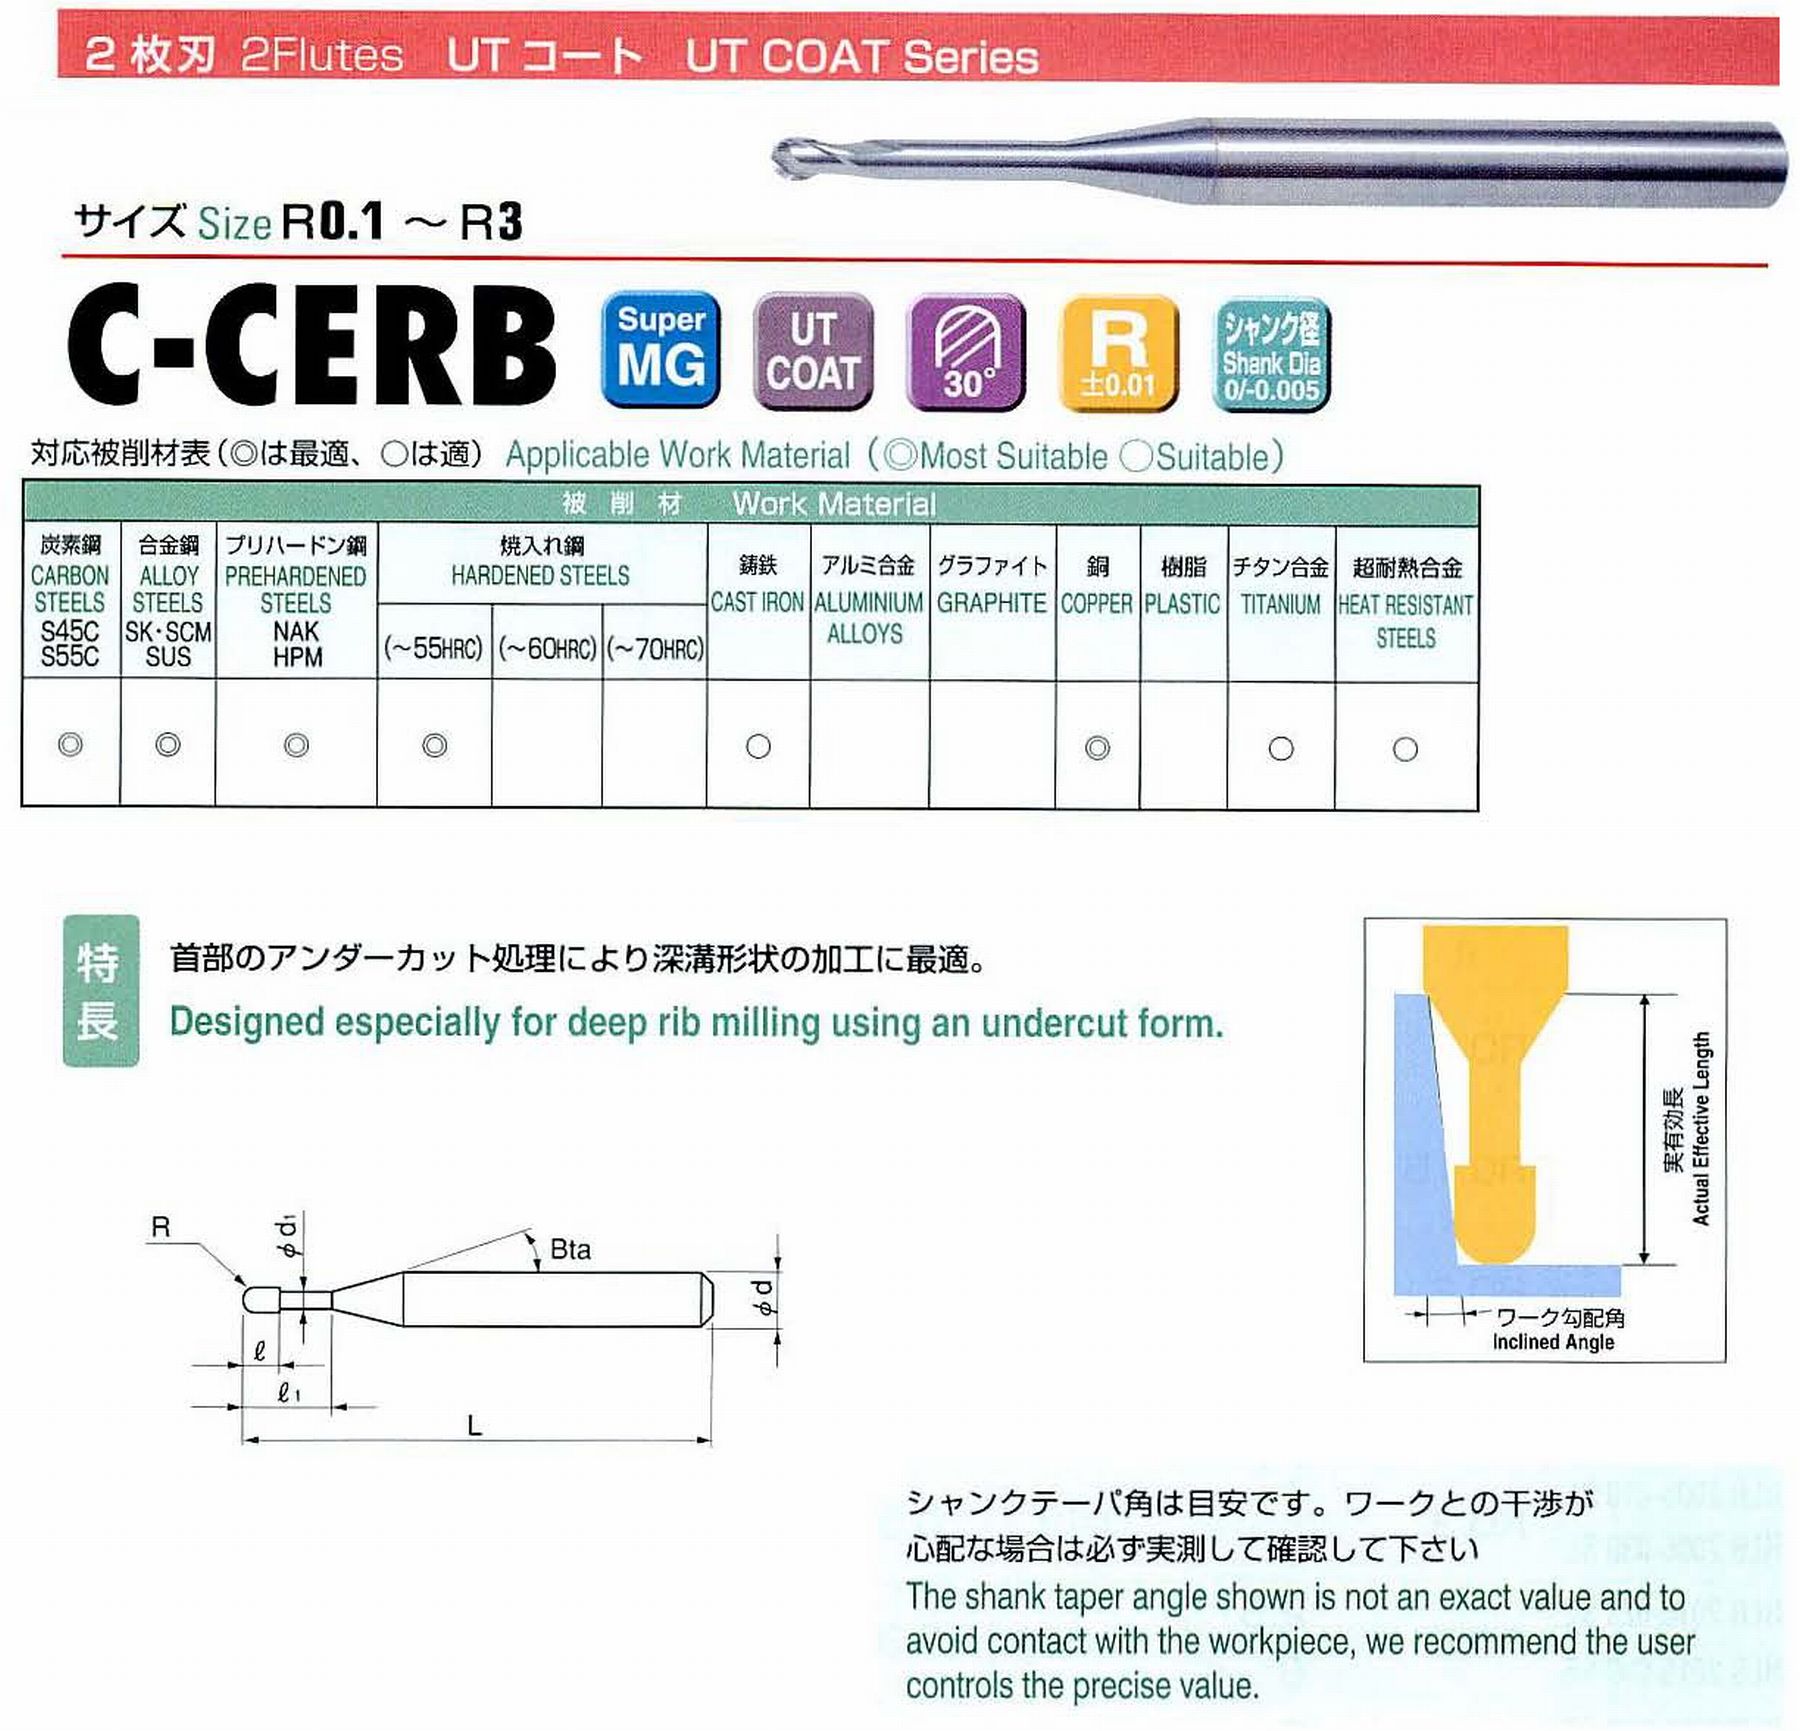 ユニオンツール 2枚刃 C-CERB2004-3 ボール半径R0.2 有効長3 刃長0.32 首径0.37 シャンクテーパ角16° 全長45 シャンク径4